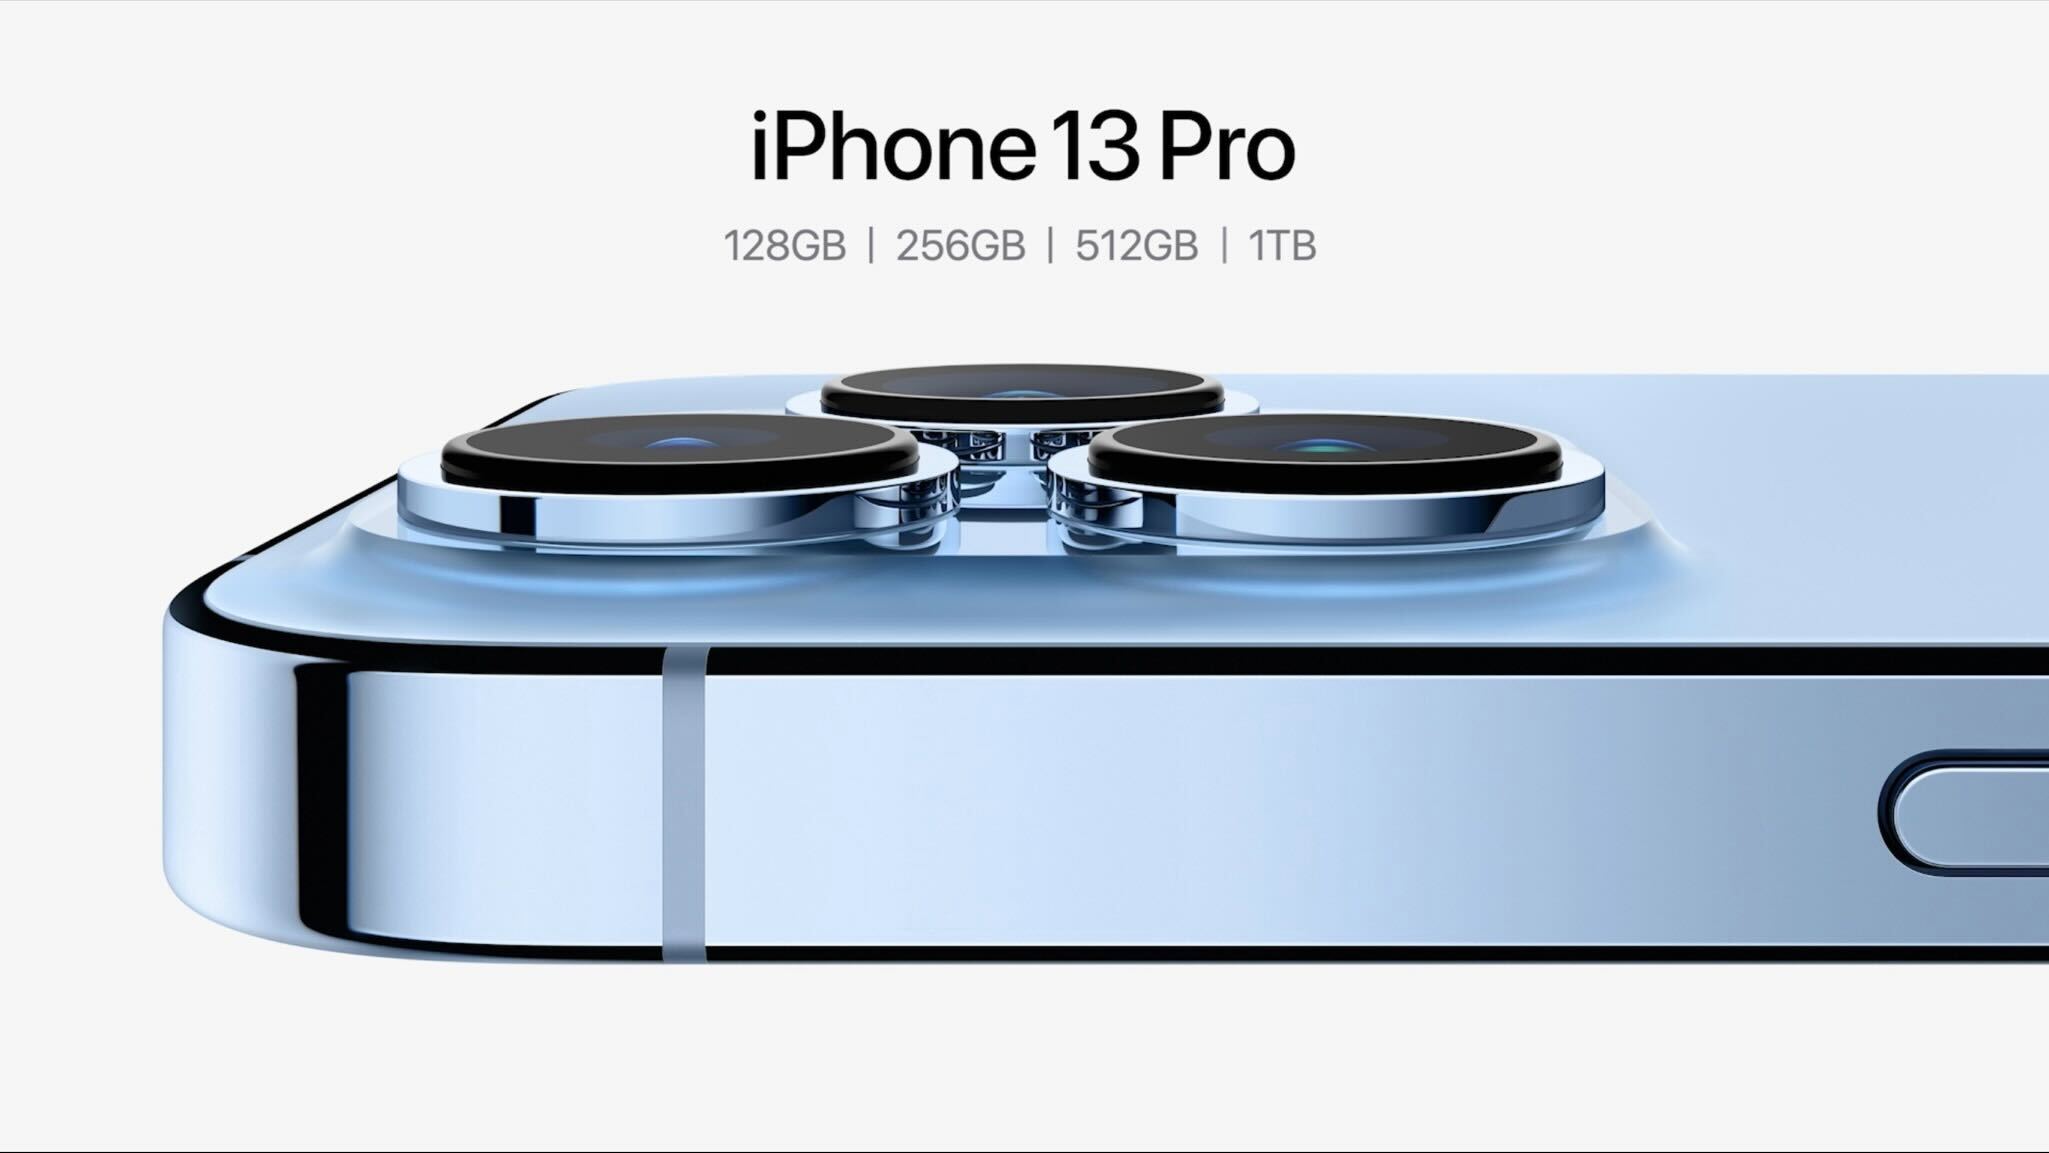 Iphone 13 Proのマクロ撮影は 広角と超広角の自動切り替え をオフにできず アップルは修正を約束 Engadget 日本版